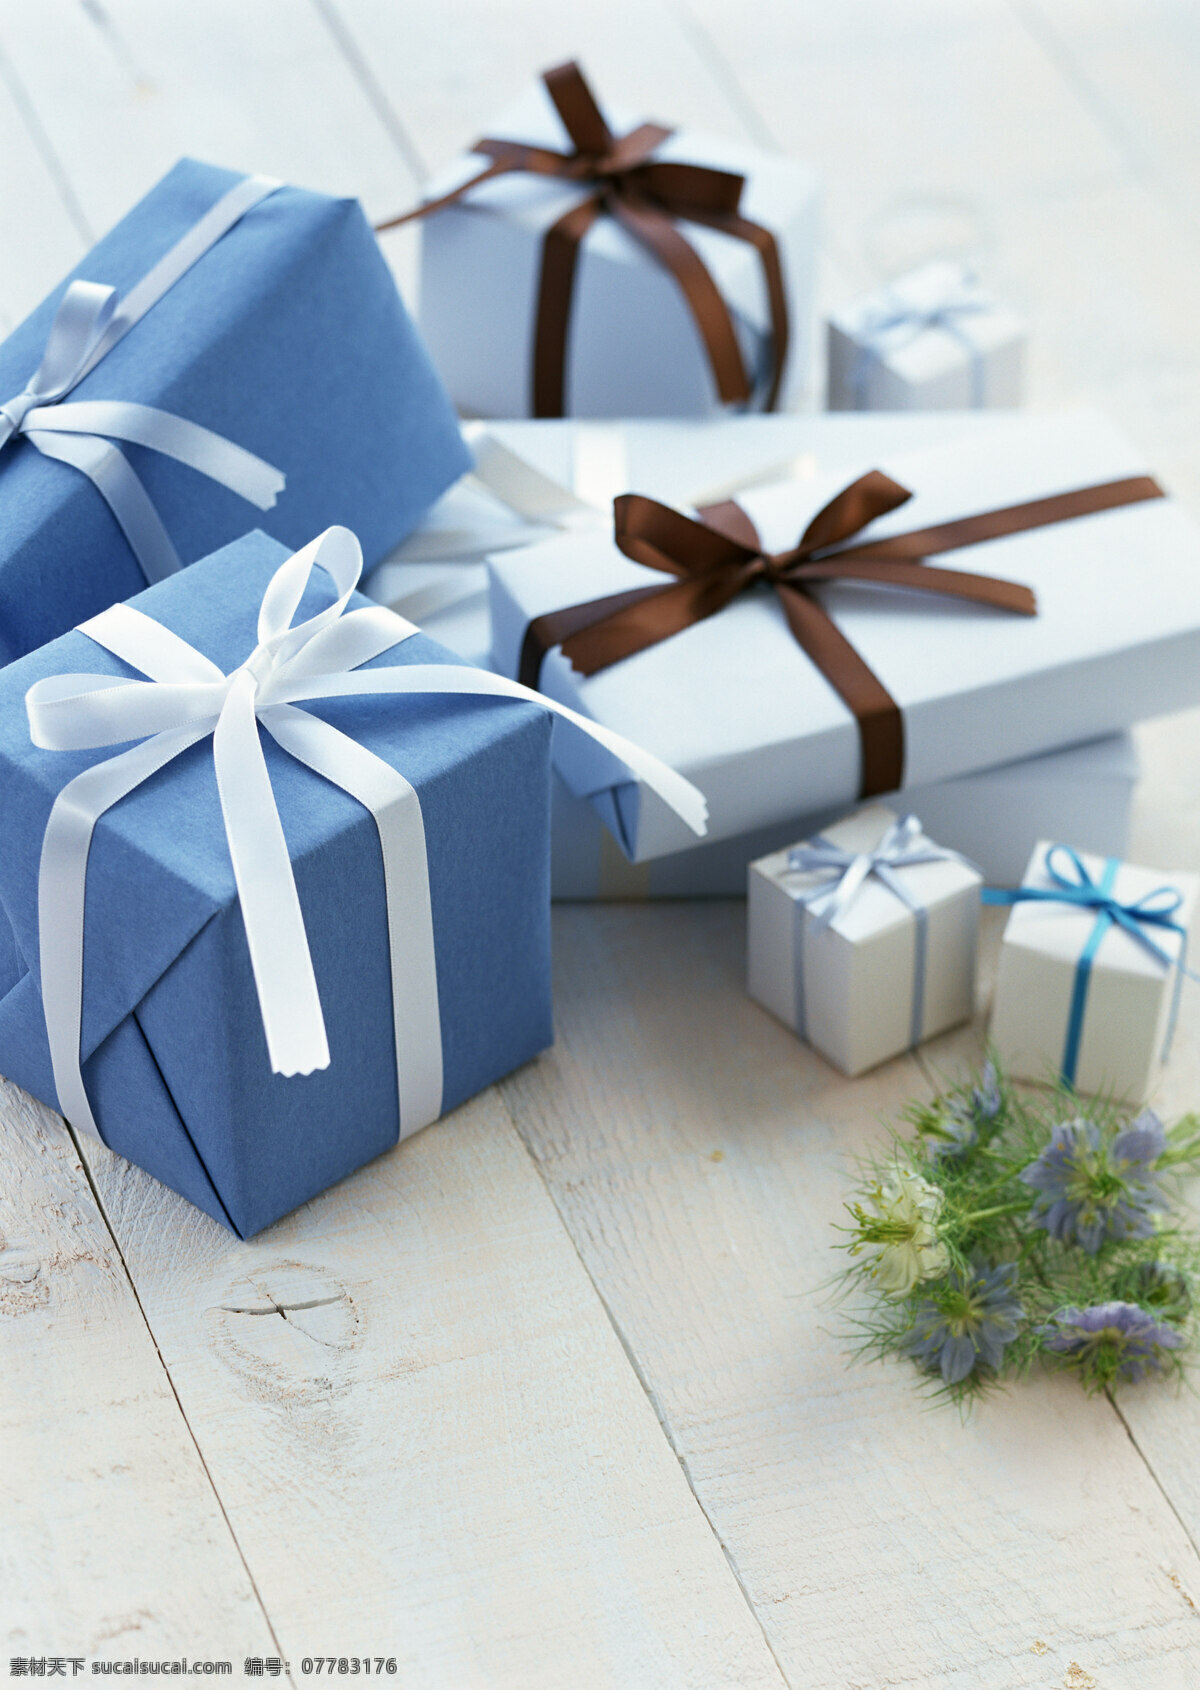 礼物 盒子 礼物盒图片 礼品 礼物包装盒 高清图片 其他类别 生活百科